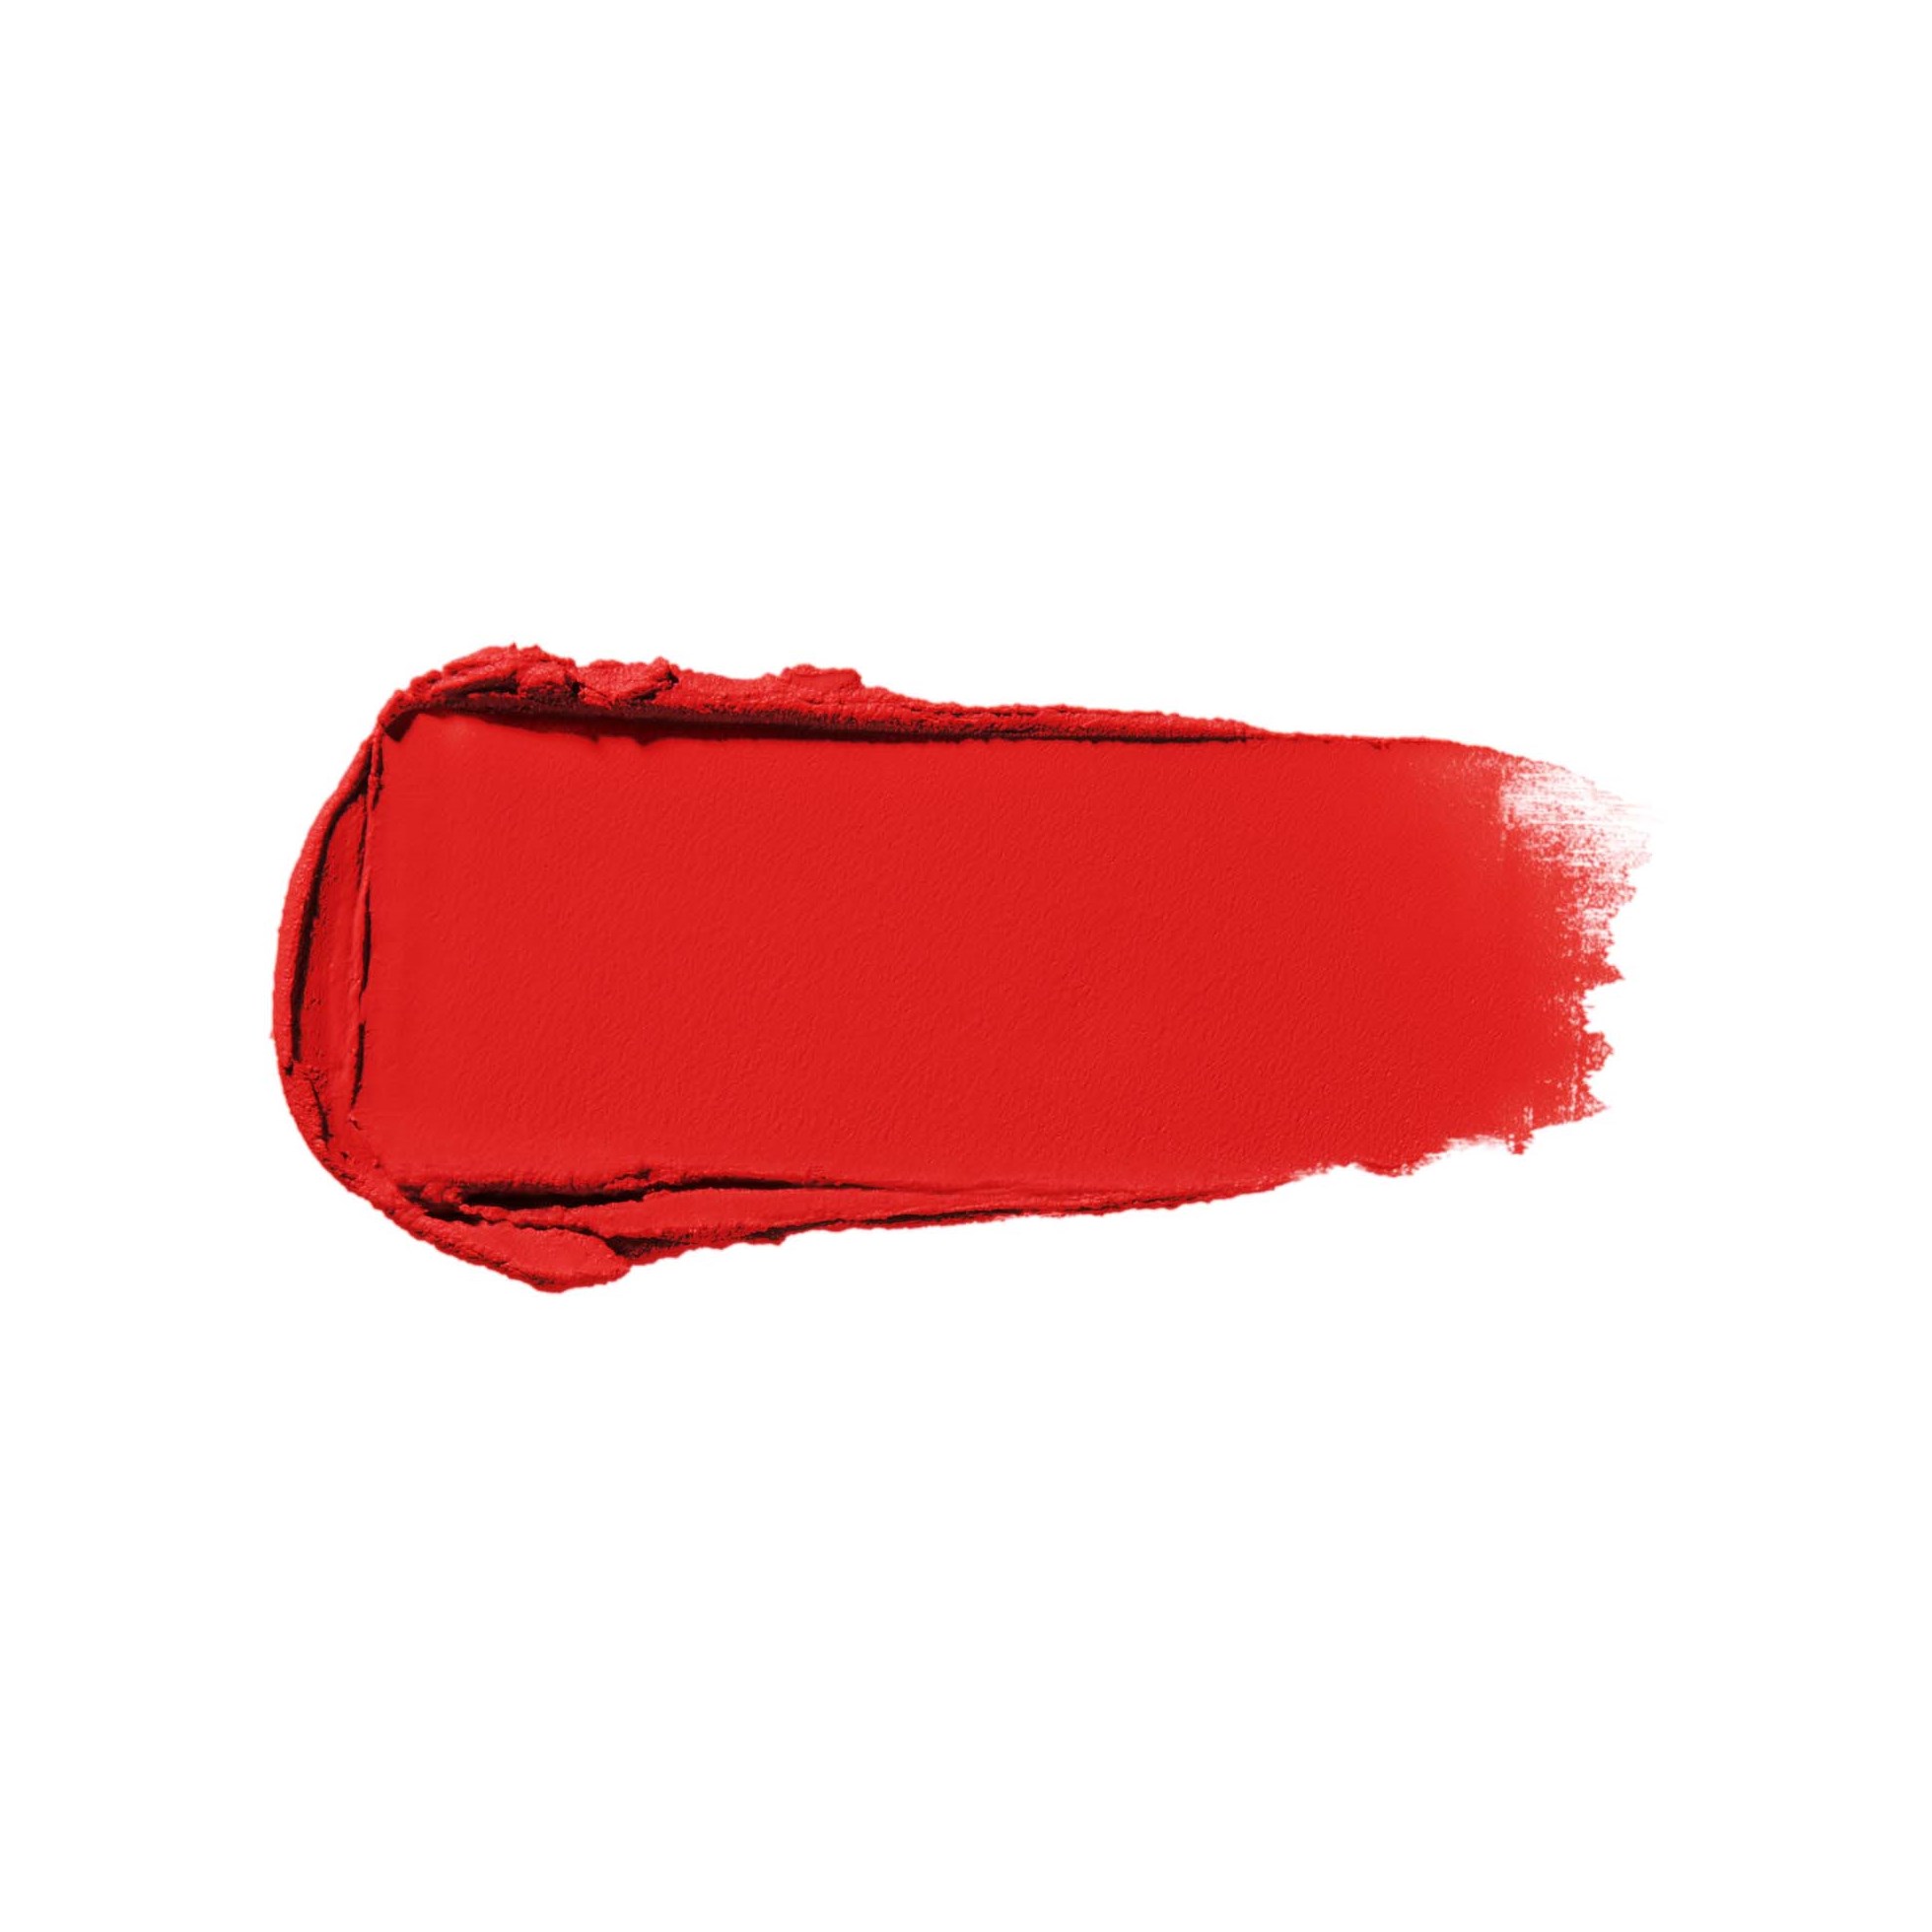 Shiseido Modernmatte Powder Lipstick 510 Night life